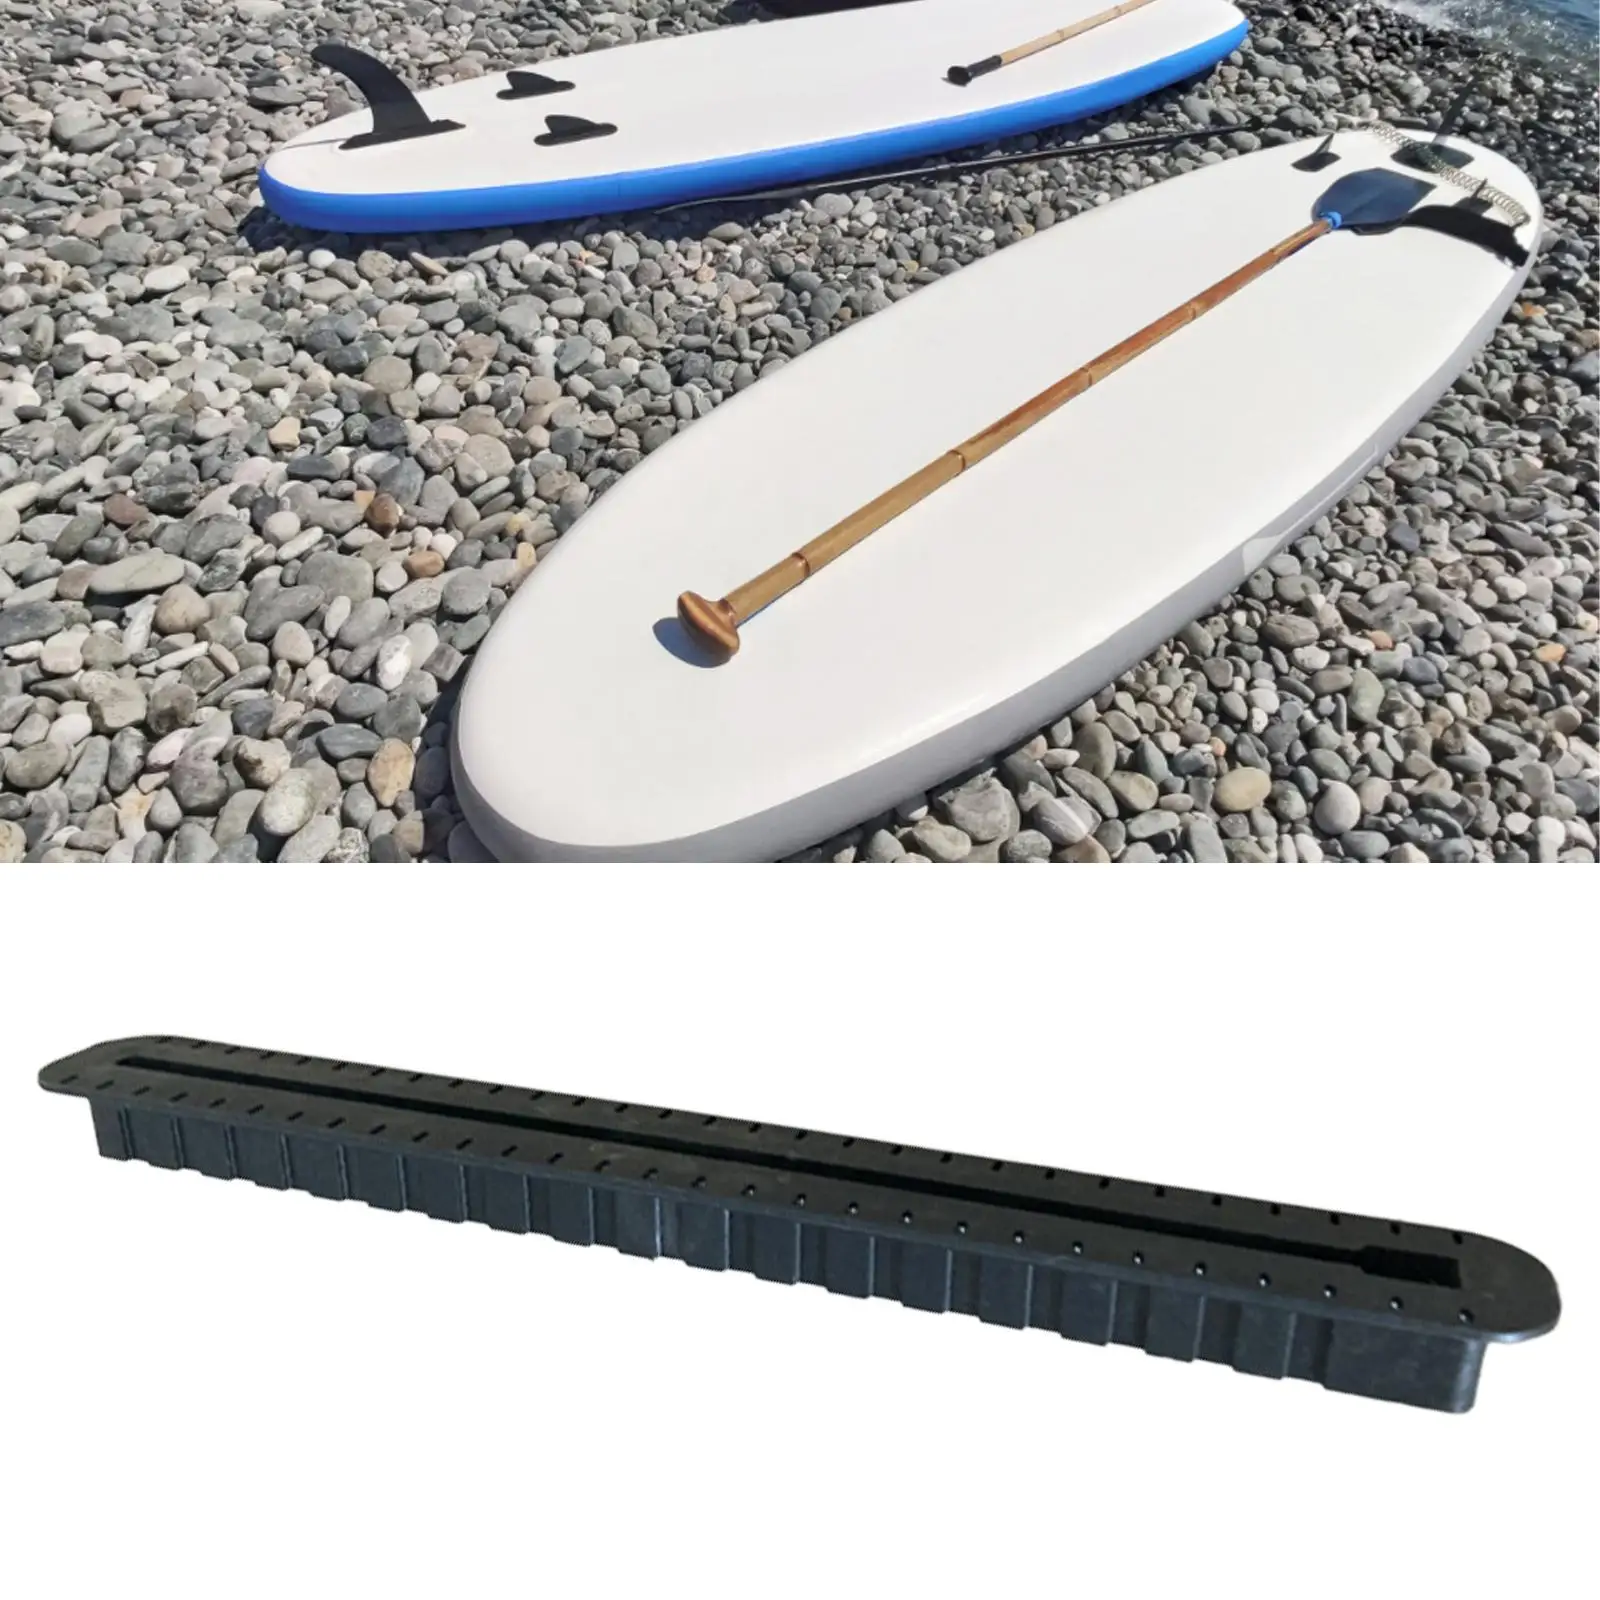 Детали коробки с одним плавником для доски для серфинга, переносной центр для серфинга, коробка для гребли 3